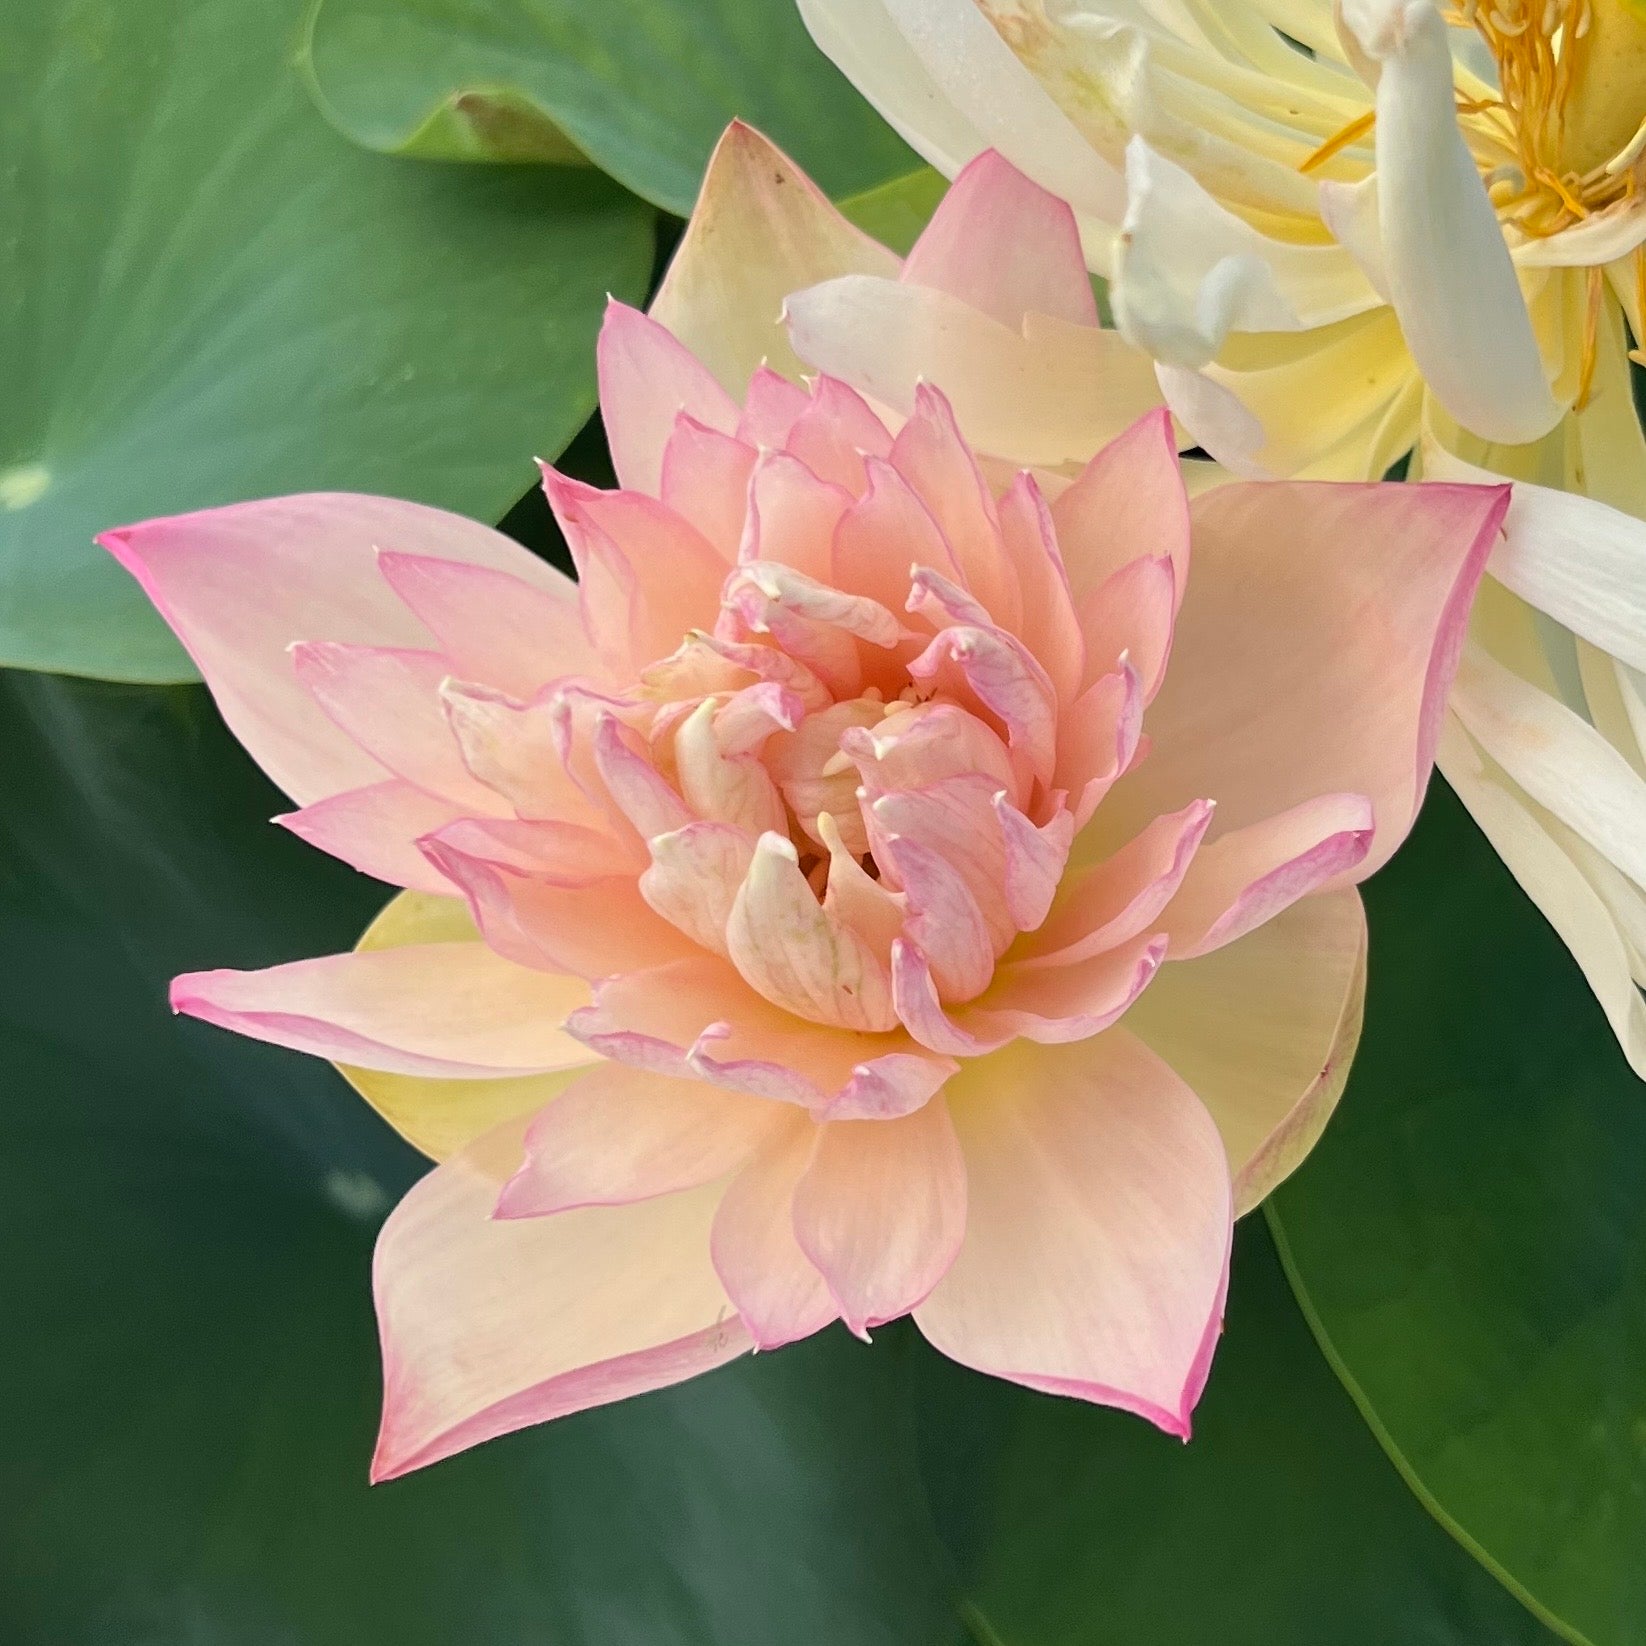 Master Lotus (Grand Master)- One of Blooming Machine Bowl Lotus( Winner) –  Bergen Water Gardens, Lotus Paradise